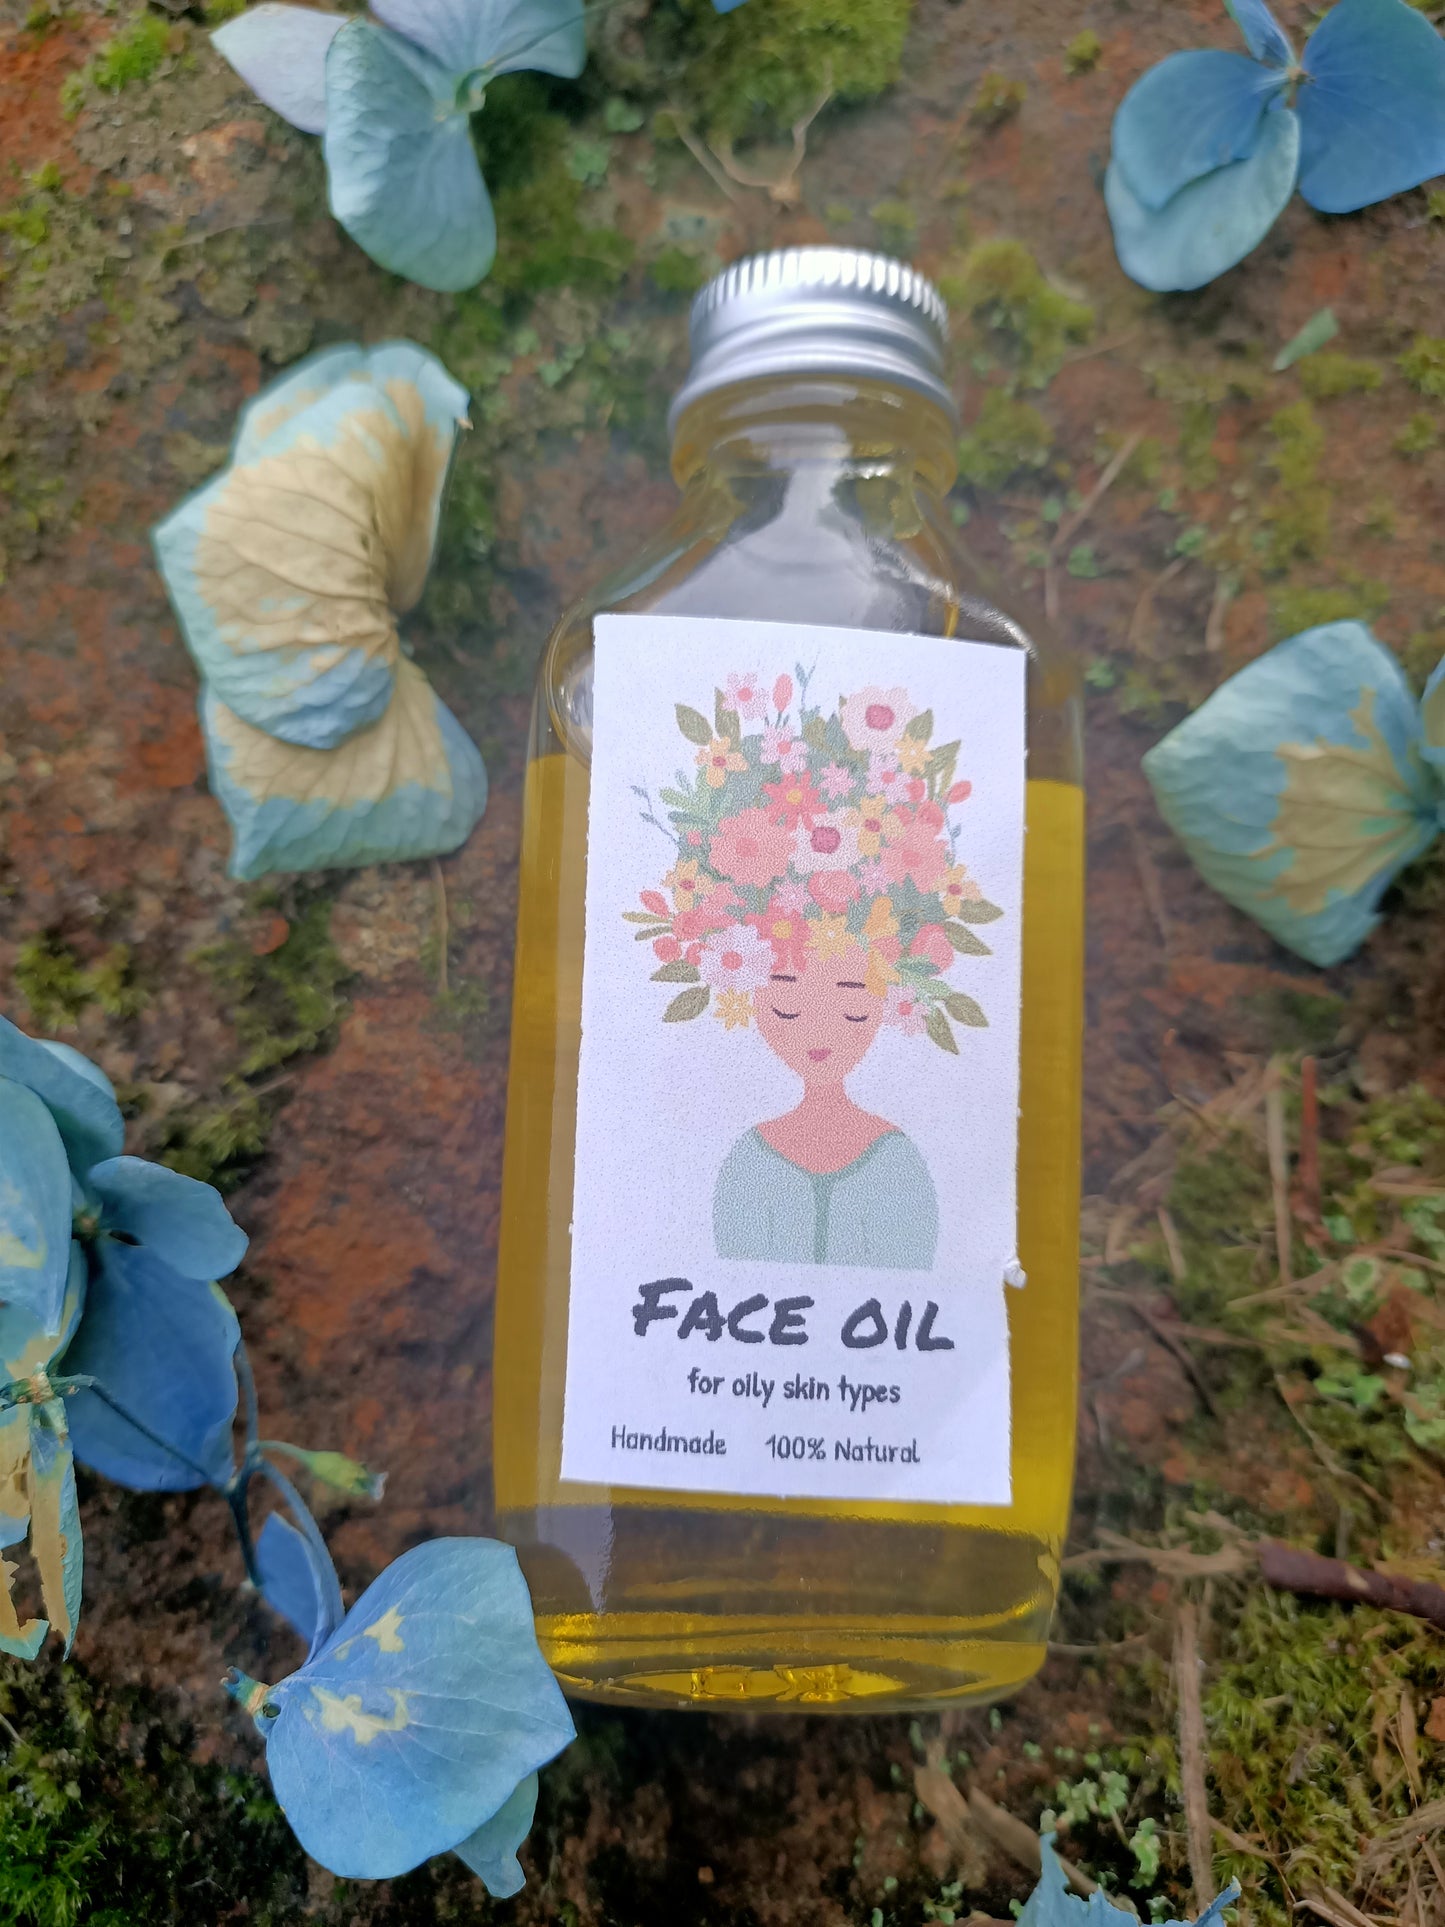 Face oil for oily skin